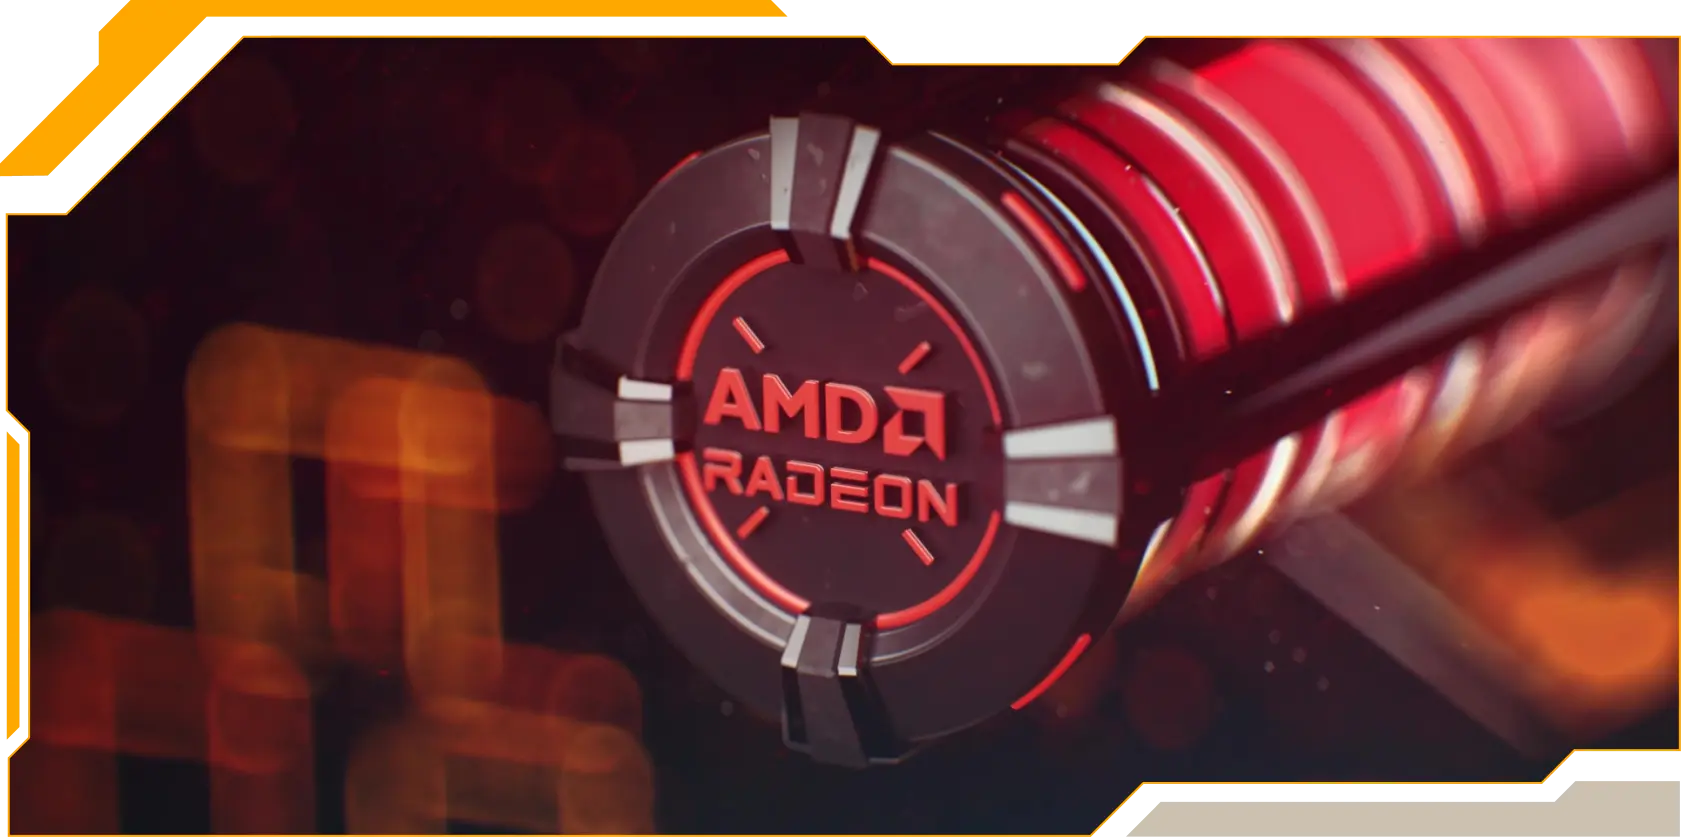 Hình ảnh kết xuất 3D một GPU, với dòng chữ màu đỏ nổi bật “AMD RADEON bên trên.